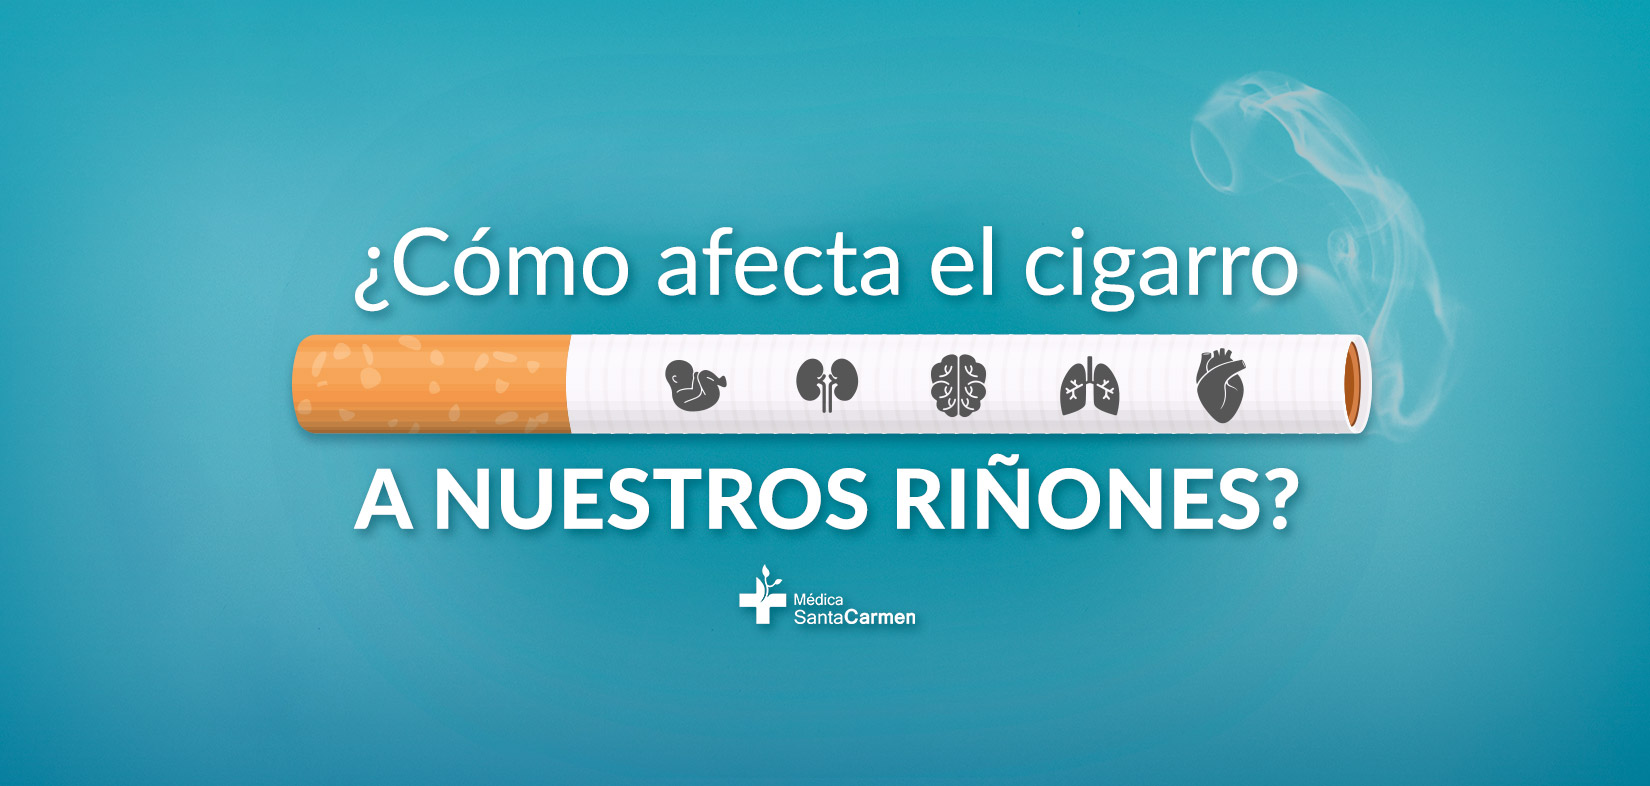 Cómo afecta el cigarro a los riñones, sobre todo en pacientes con  insuficiencia renal crónica. - Médica Santa Carmen